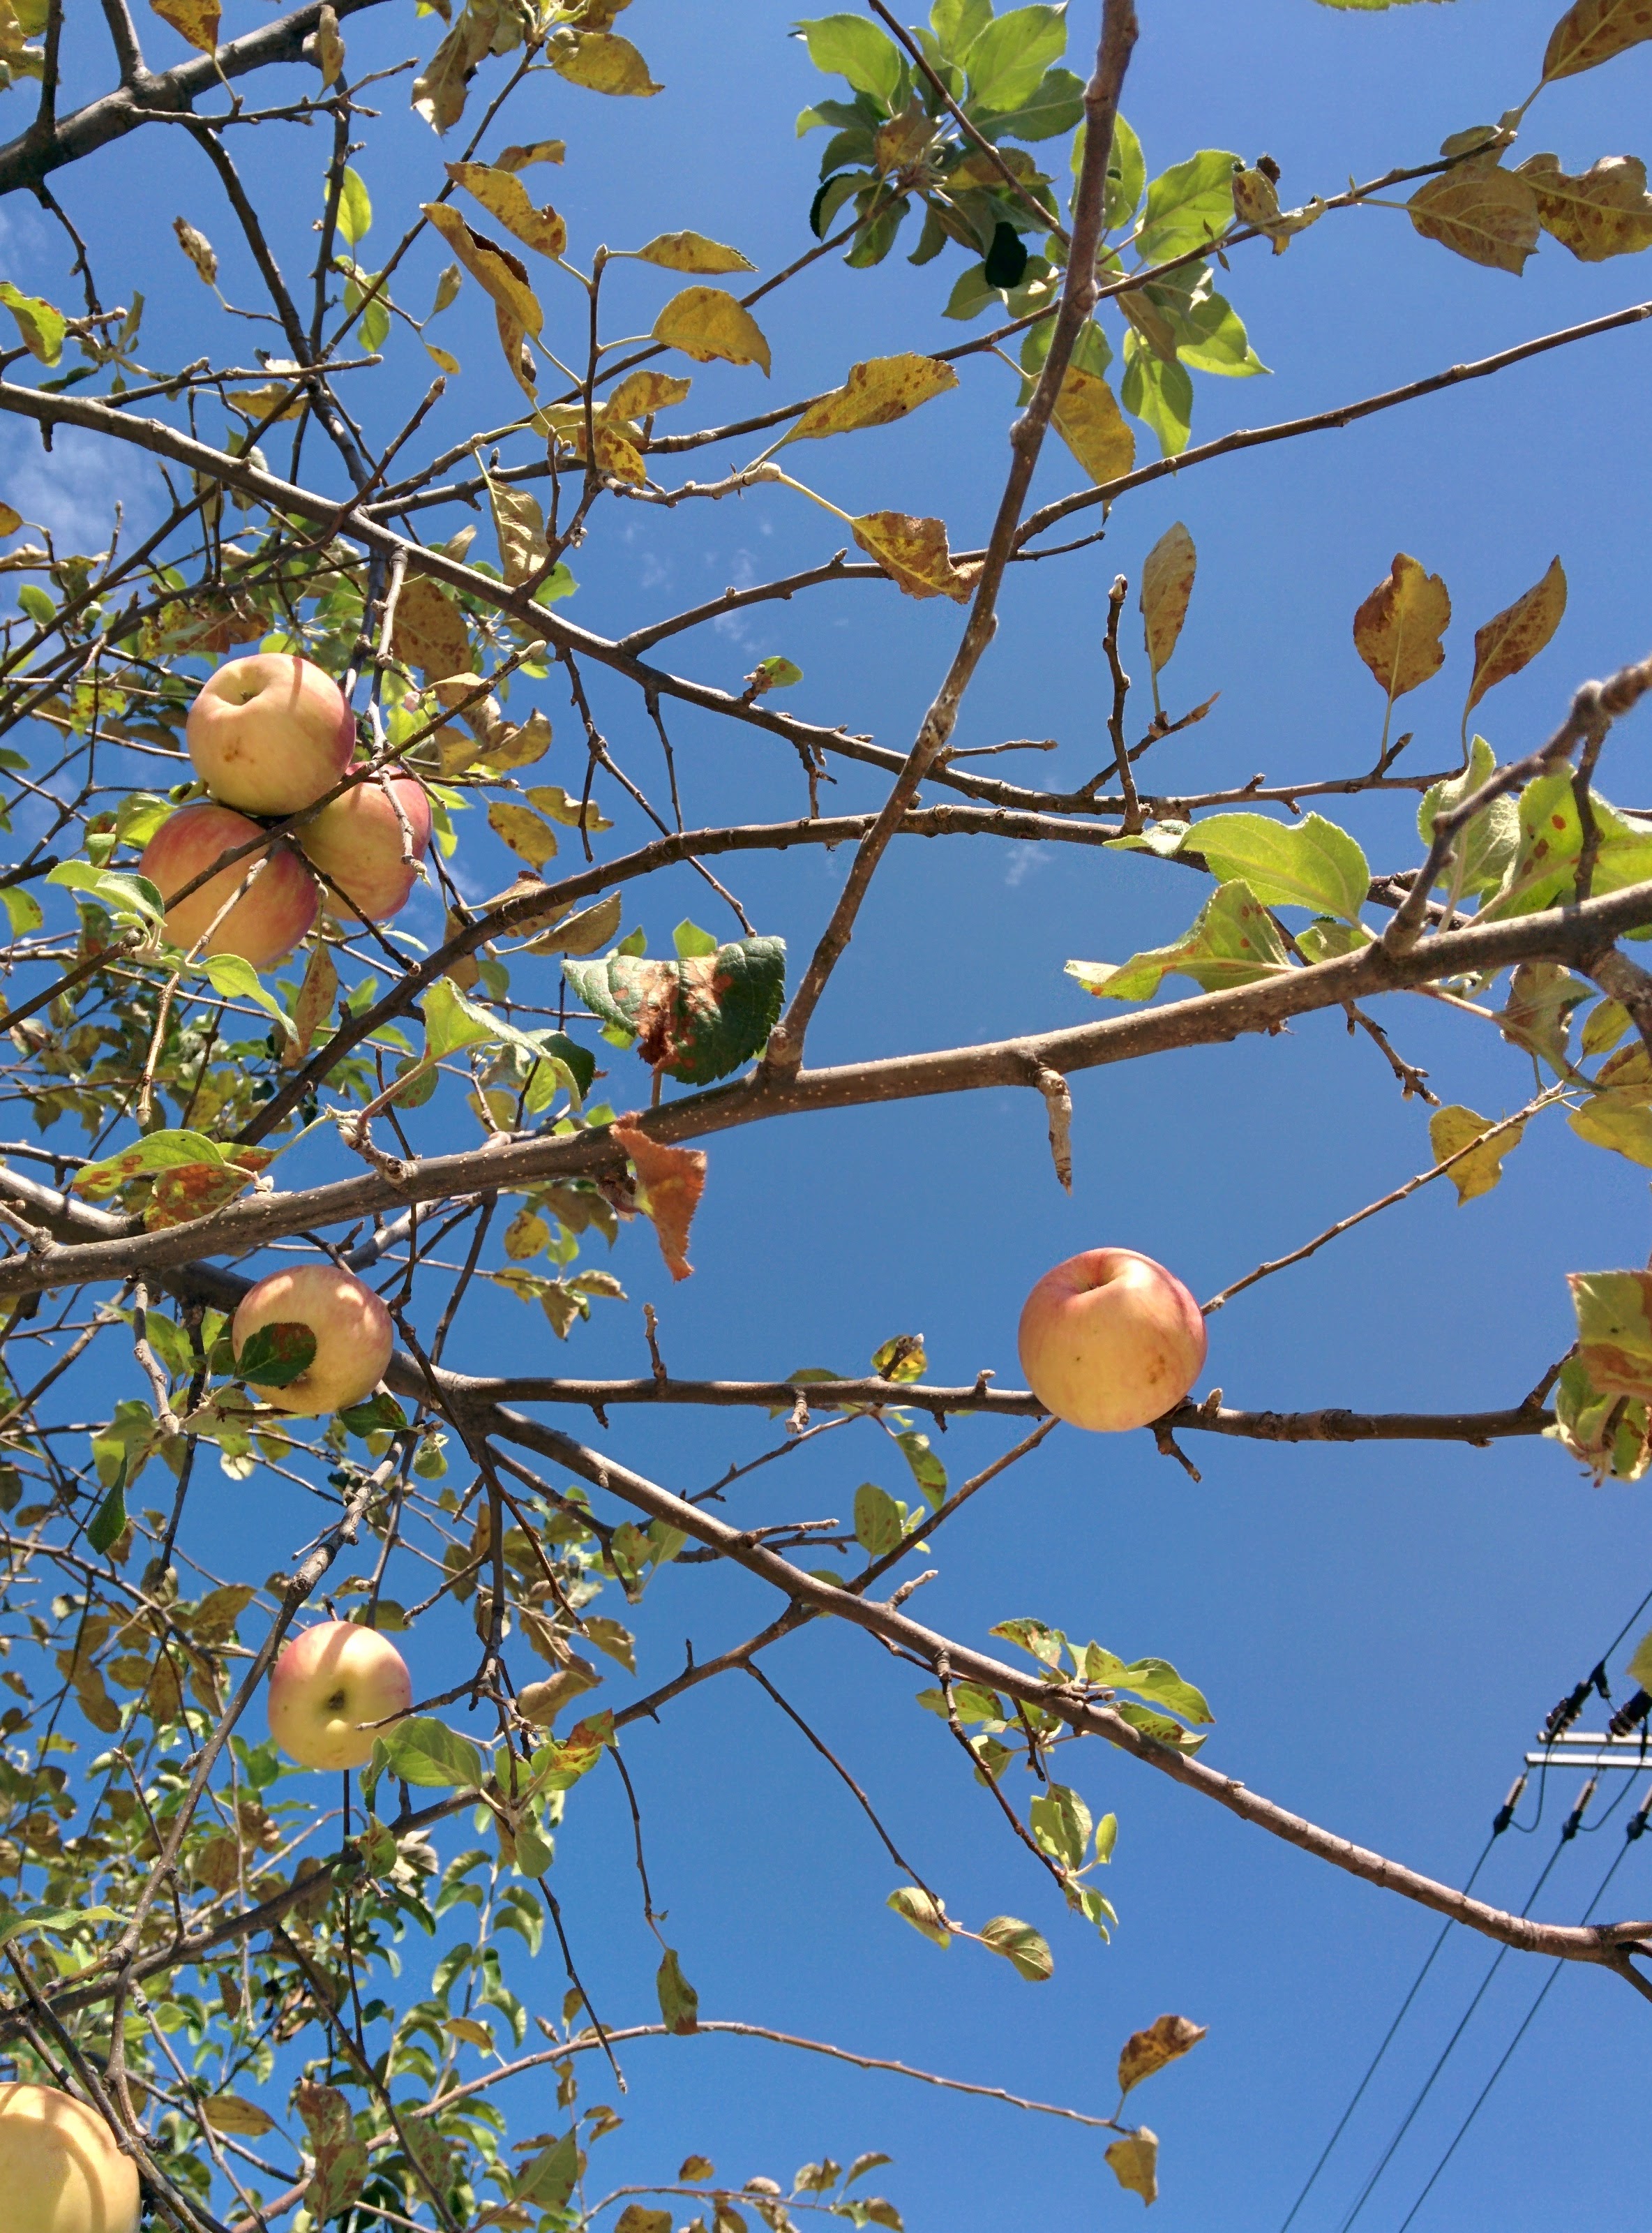 IMG_20150929_114716.jpg 가정집 정원수로 자라는 키큰 사과나무의 사과 열매